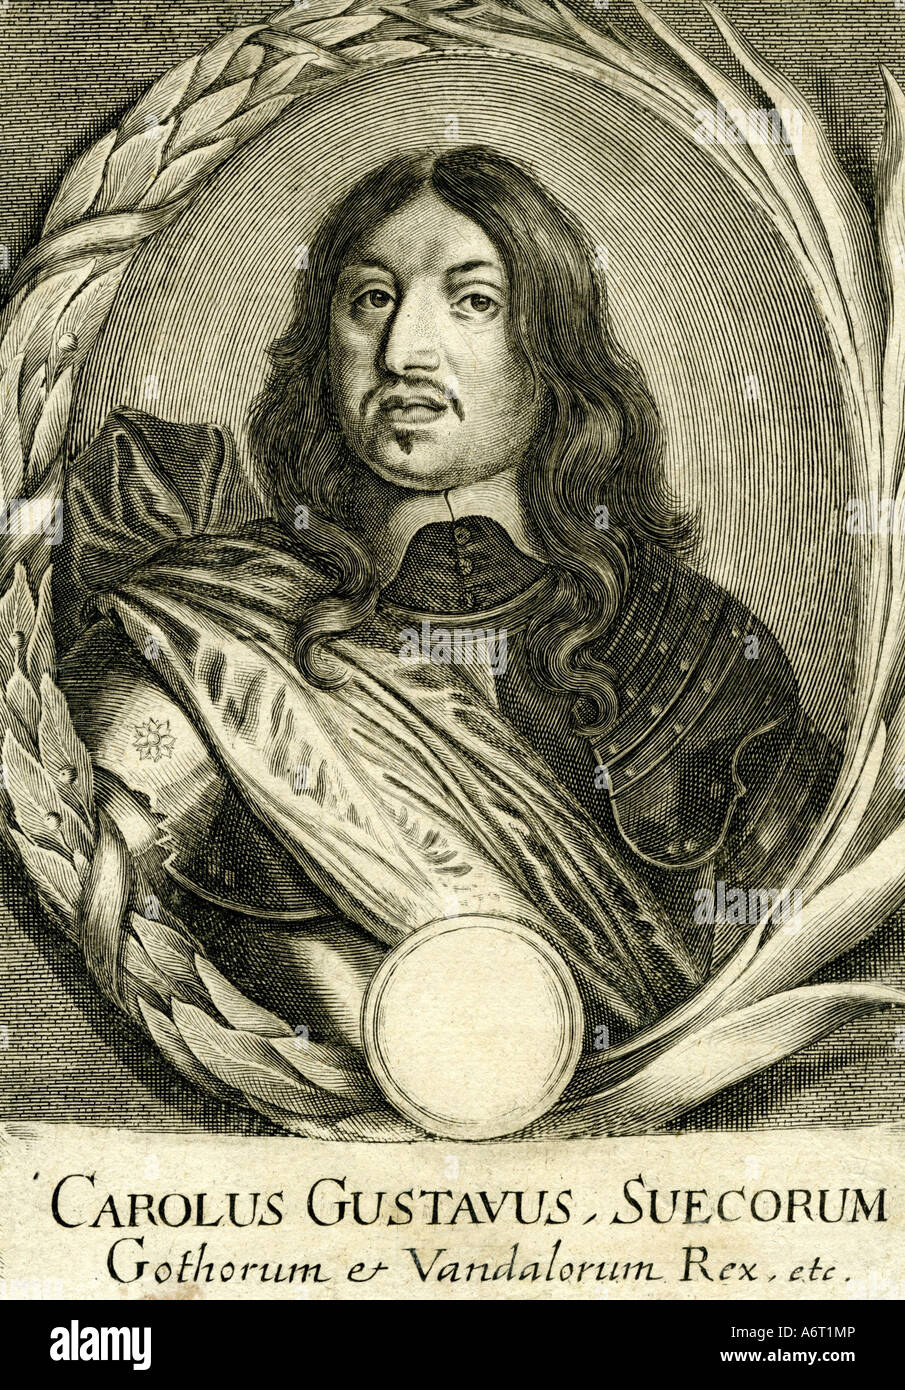 Charles X. Gustav, 8.11.1622 - 23 2.1660, König von Schweden, 16.6.1654 - 23.2.1660, Porträt, Gravur, 17. Jahrhundert, historische, Hallo Stockfoto